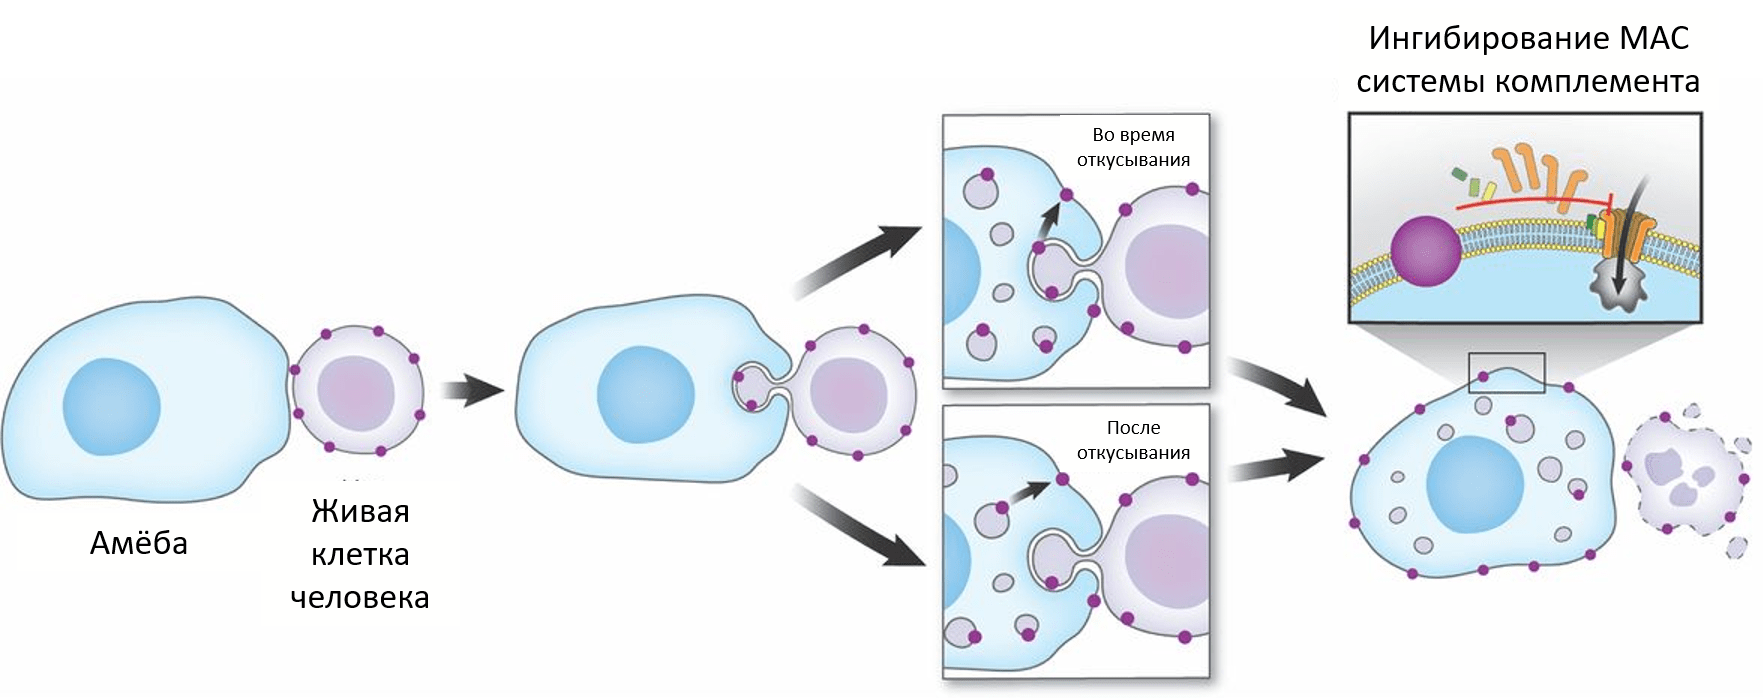 Предполагаемые модели трансфера мембранных белков от человеческой клетки к амебе, который помогает ей уходить от иммунного ответа